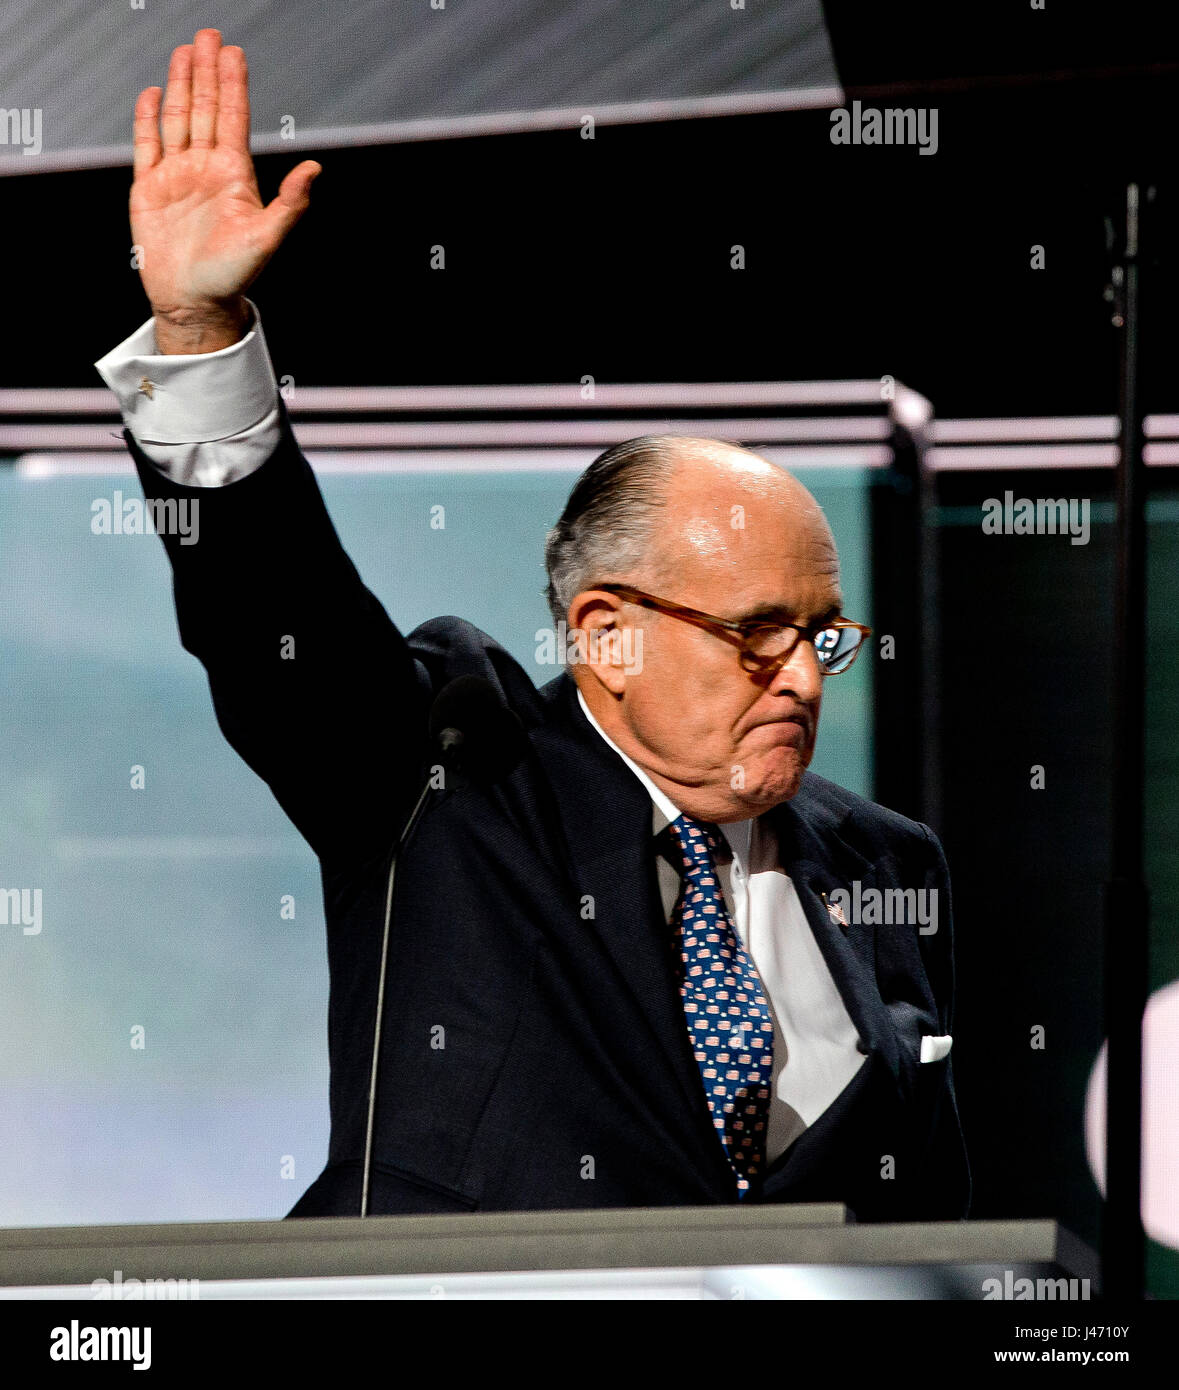 Ehemaliger Bürgermeister von New York City Rudy Giuliani befasst sich mit der republikanischen Nominierung in Quicken Sport Arena Cleveland Ohio, 18. Juli 2016.  Foto: Mark Reinstein Stockfoto